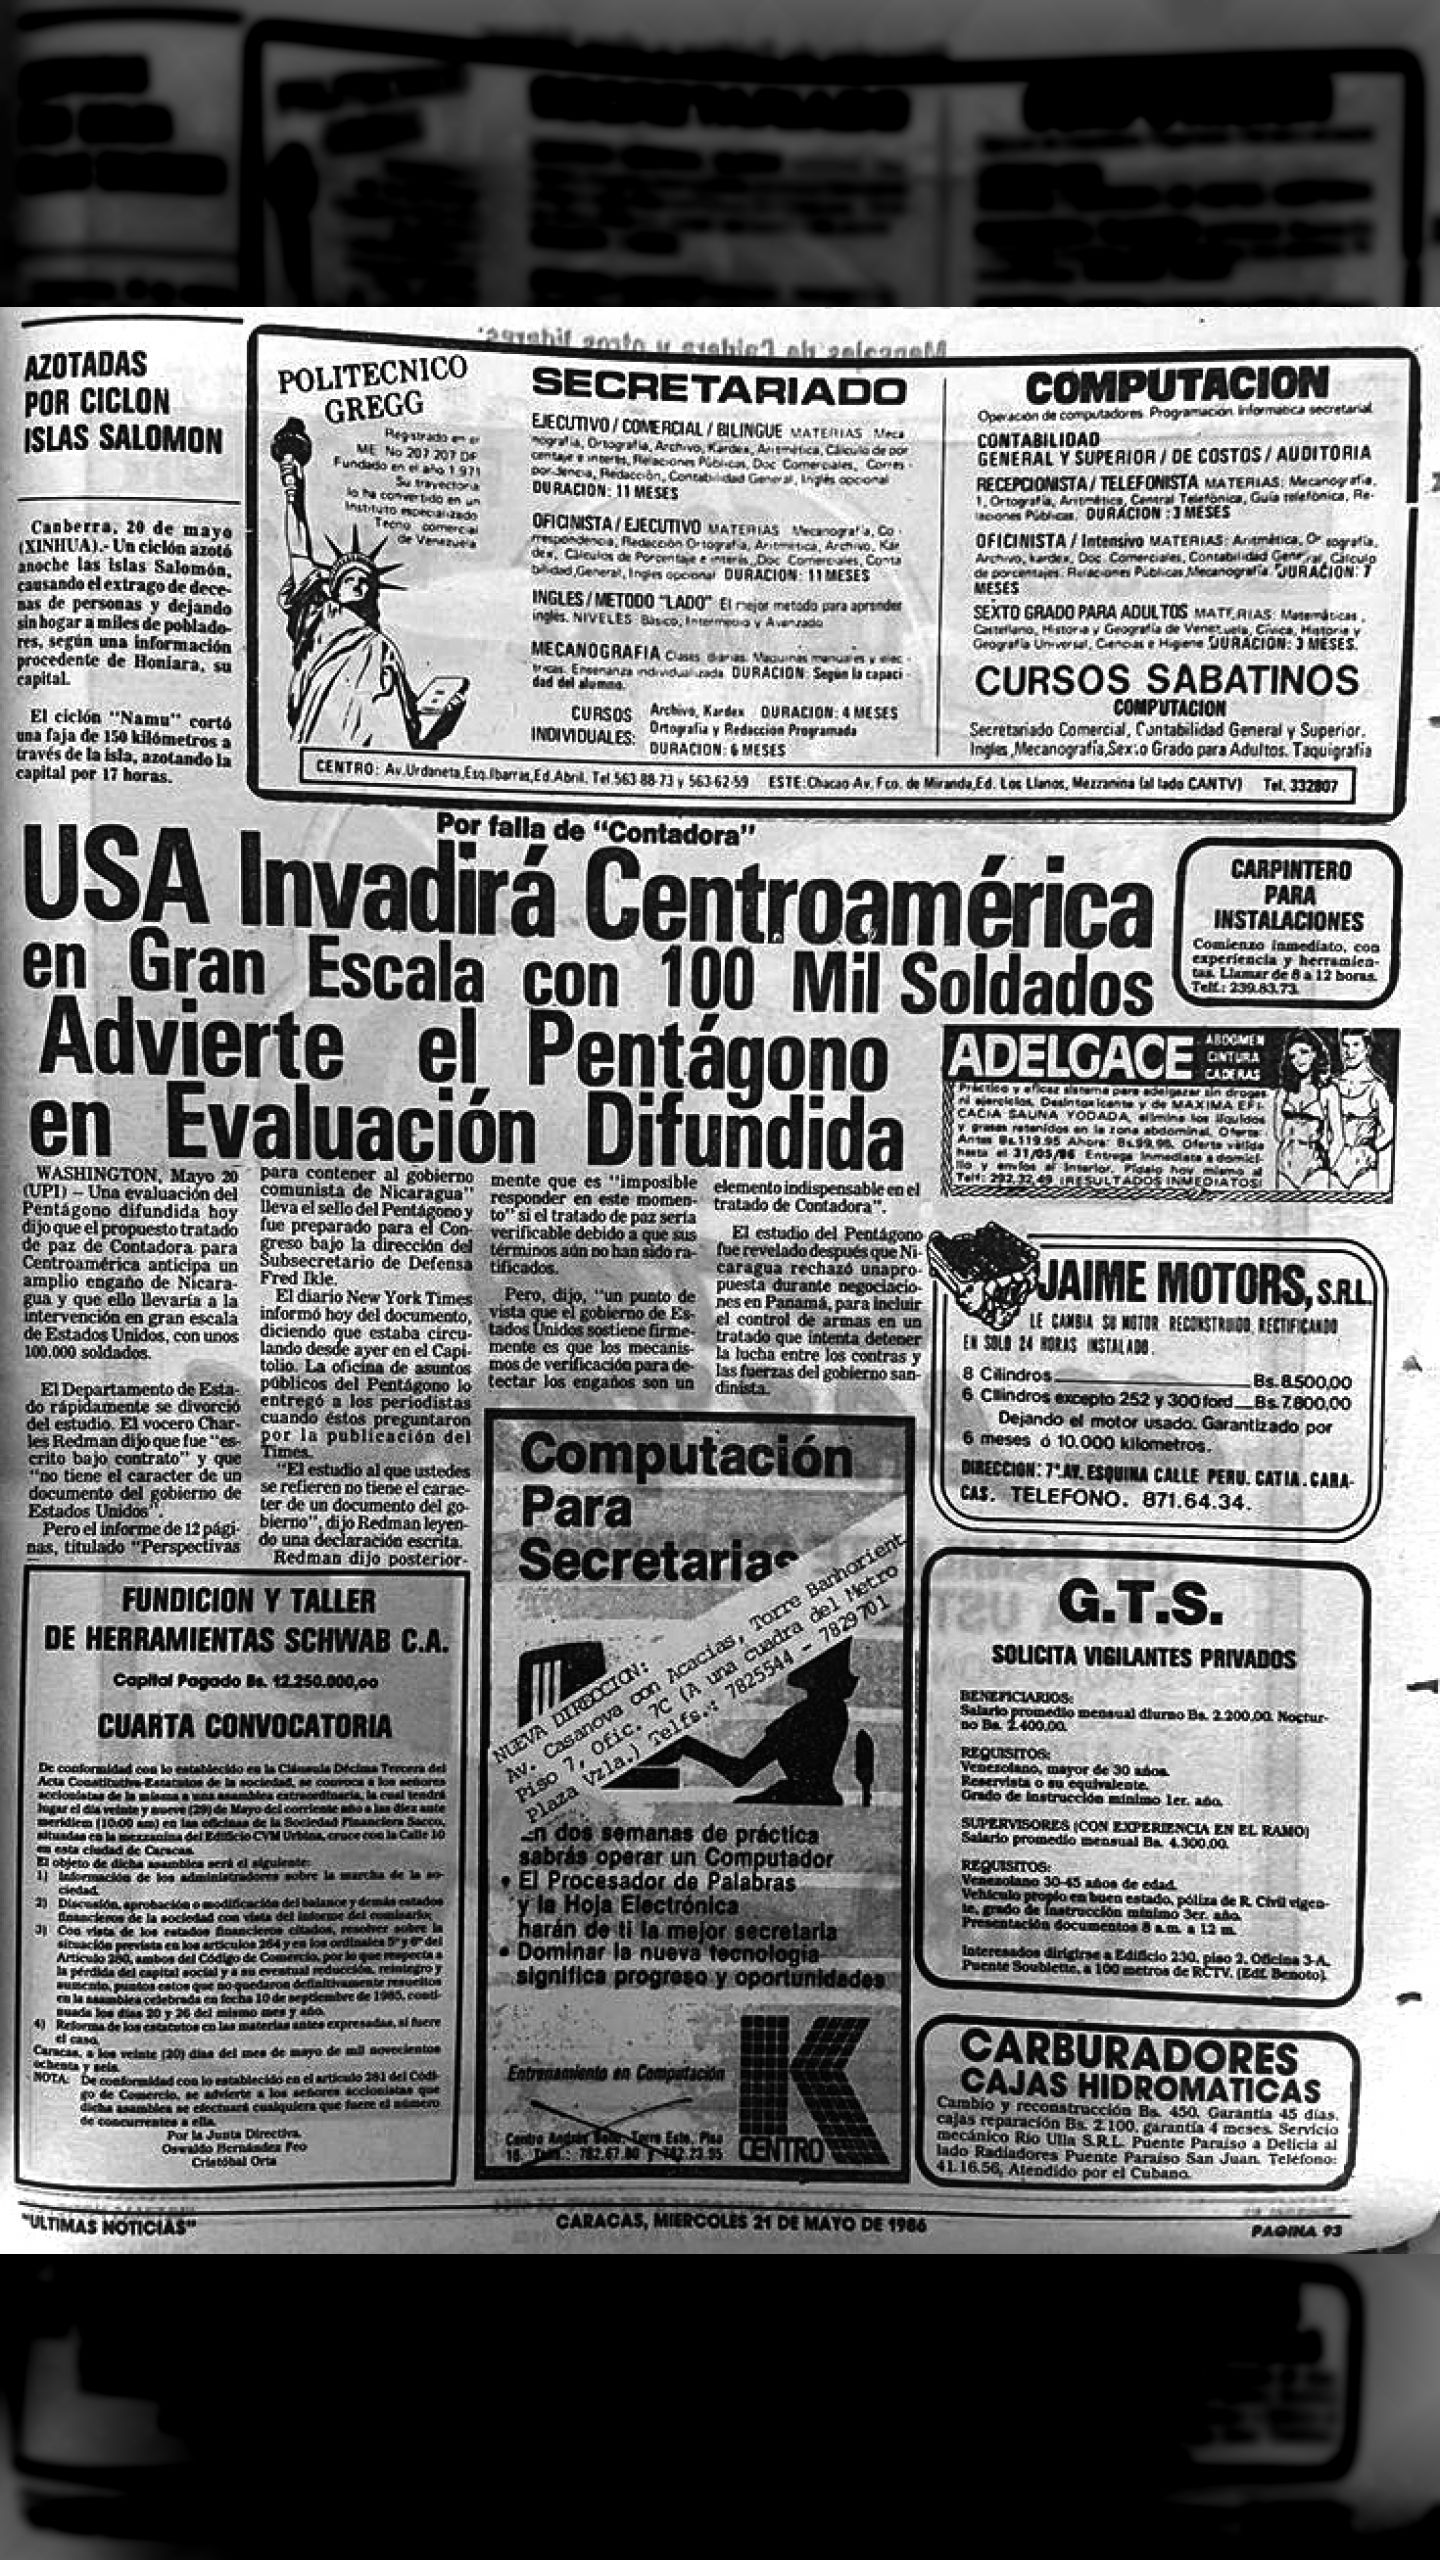 USA invadiría a Centro América con 100.000 Marines (Últimas Noticias, 21 de mayo de 1986)